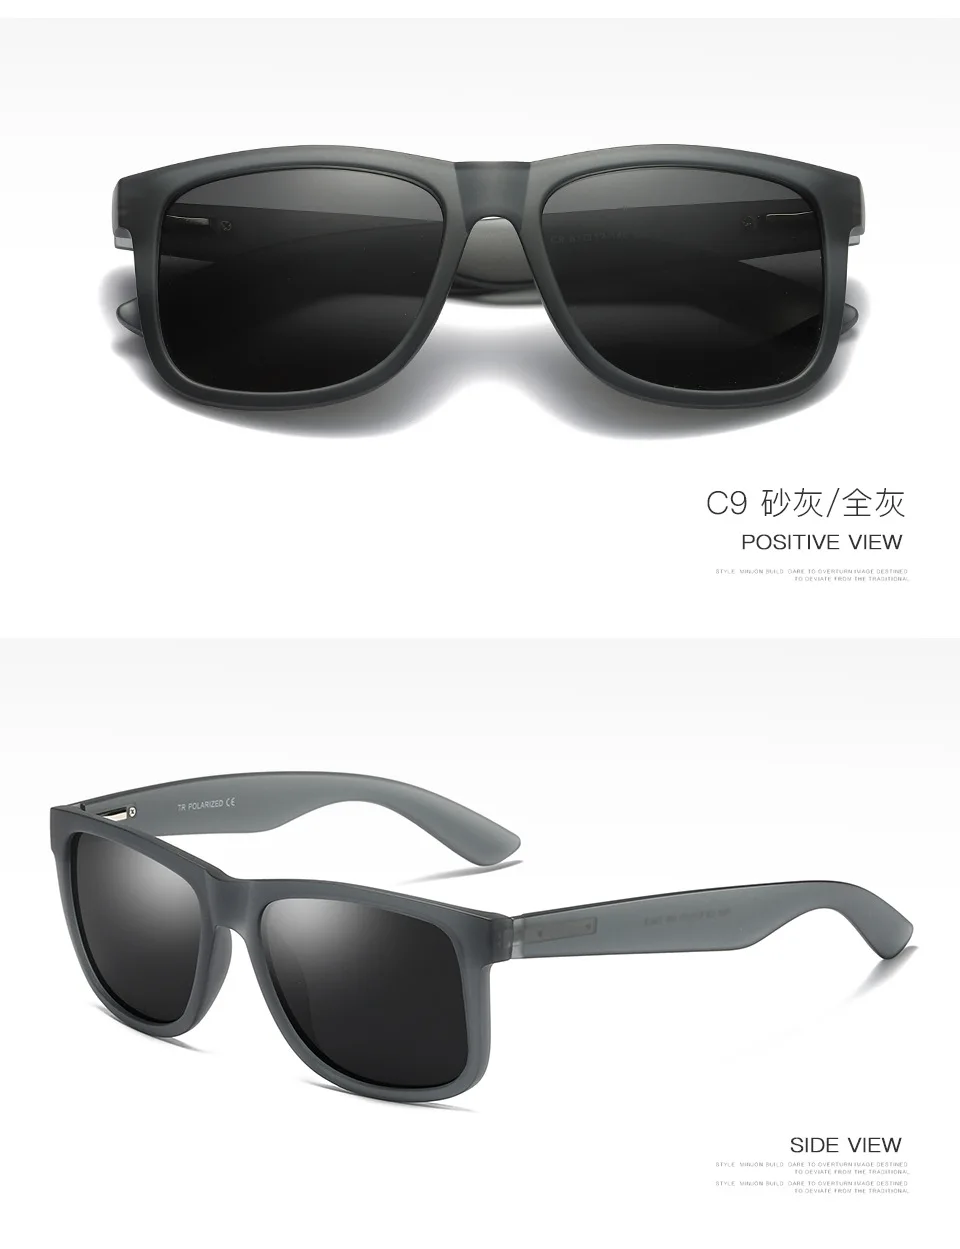 Ruosyling, классические поляризационные солнцезащитные очки, мужские, бренд UV 400, квадратная оправа, для вождения, Ретро стиль, мужские солнцезащитные очки, темные, матовые, черные очки